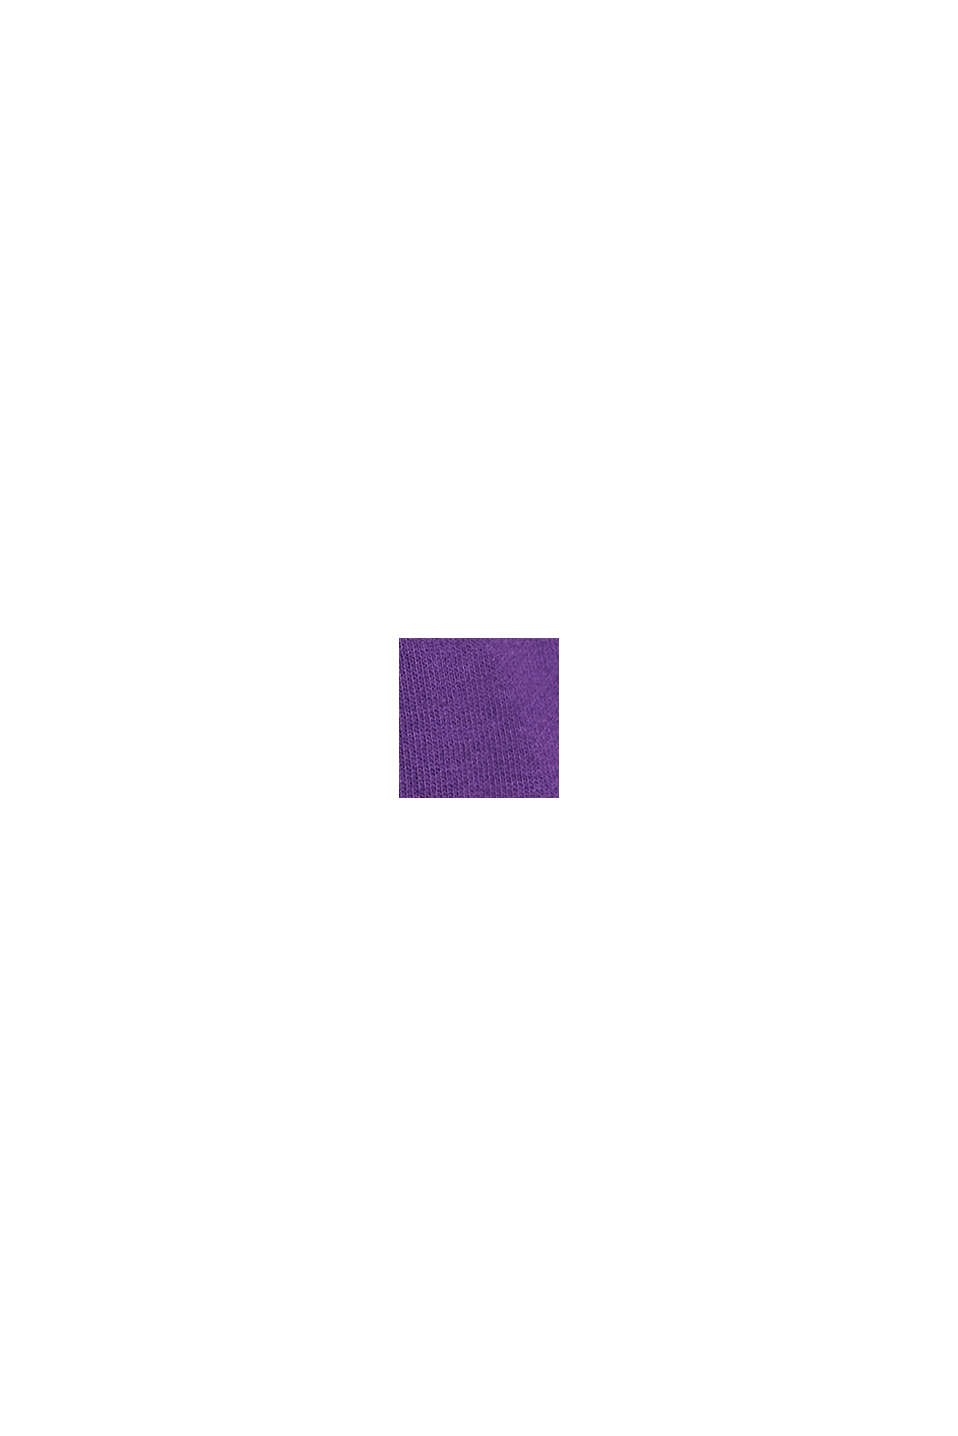 短款LOGO圖案連帽衛衣, 紫色, swatch